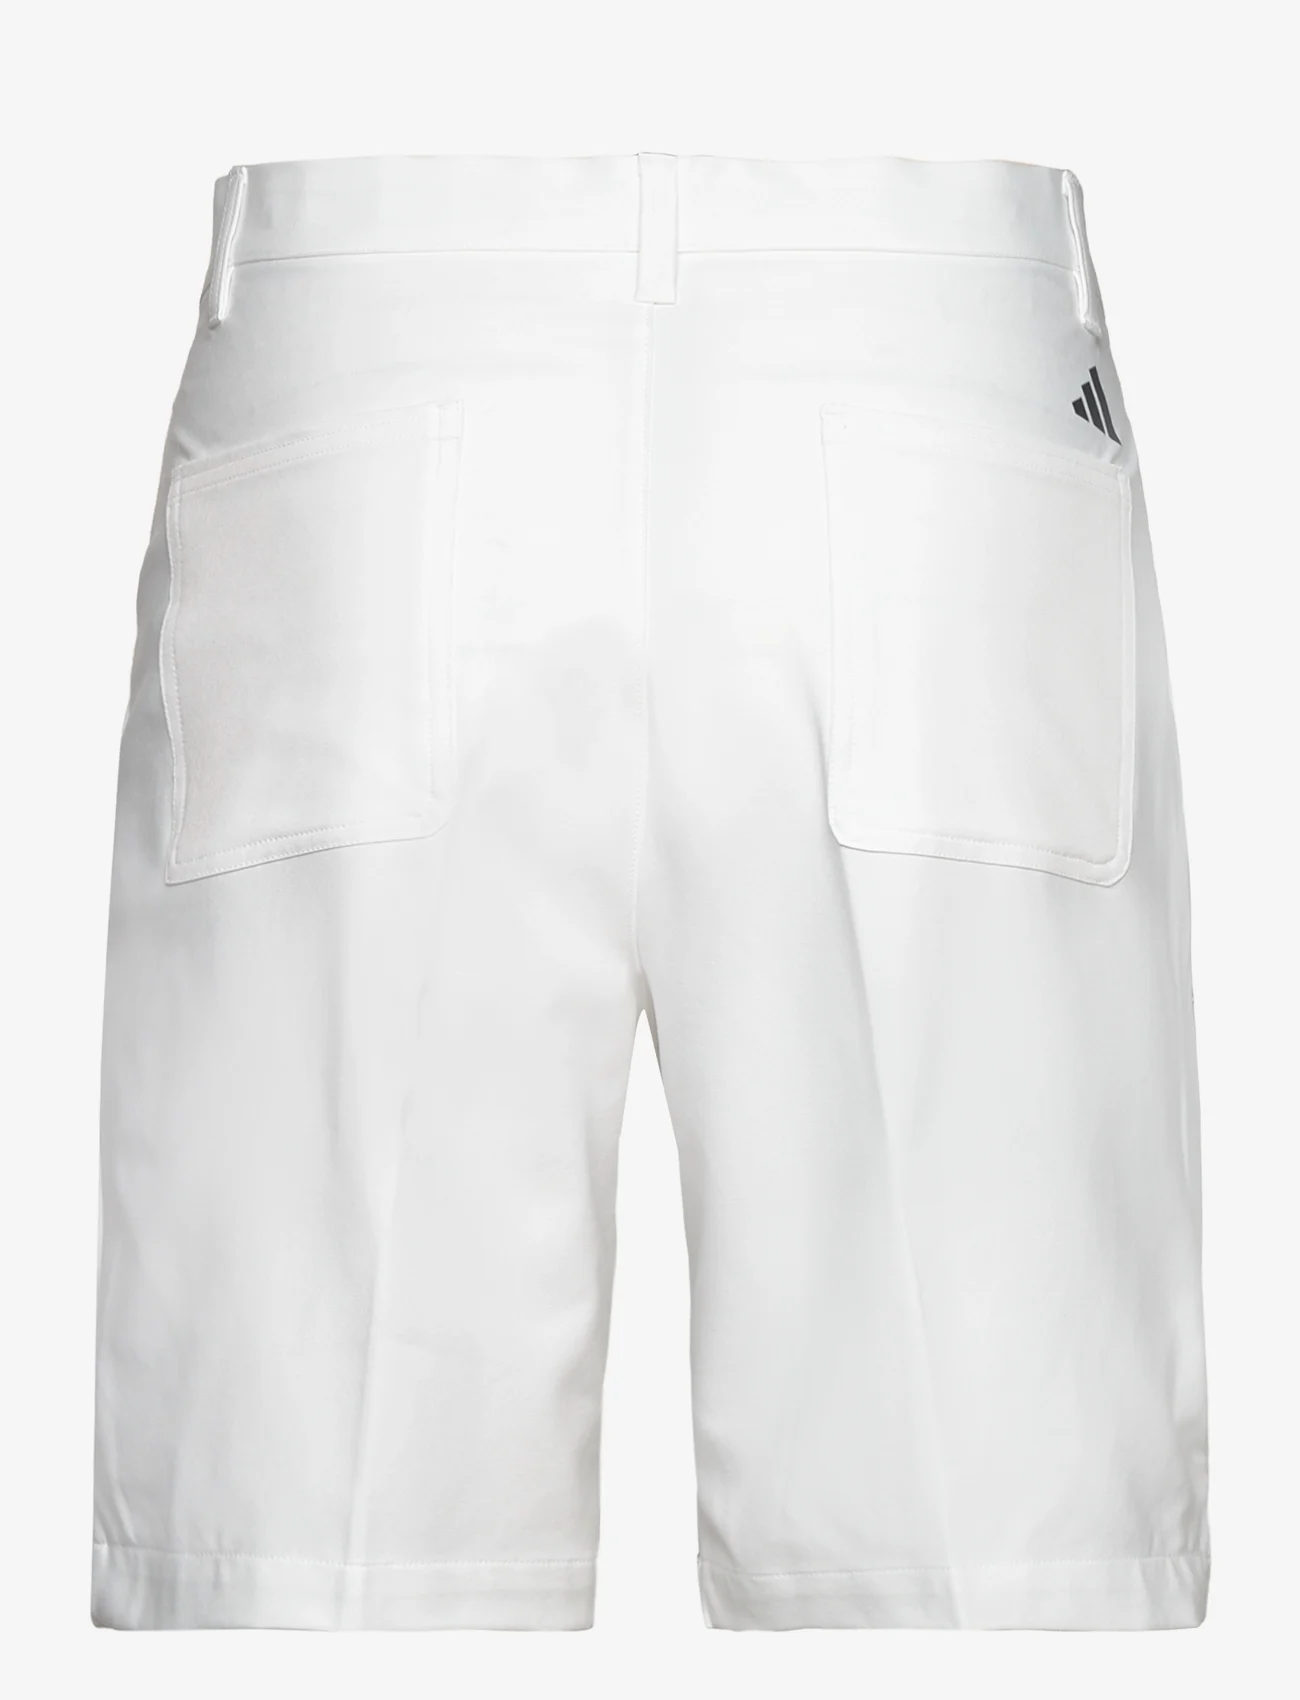 adidas Golf - UTILITY SHORT - trainingsshorts - white - 1